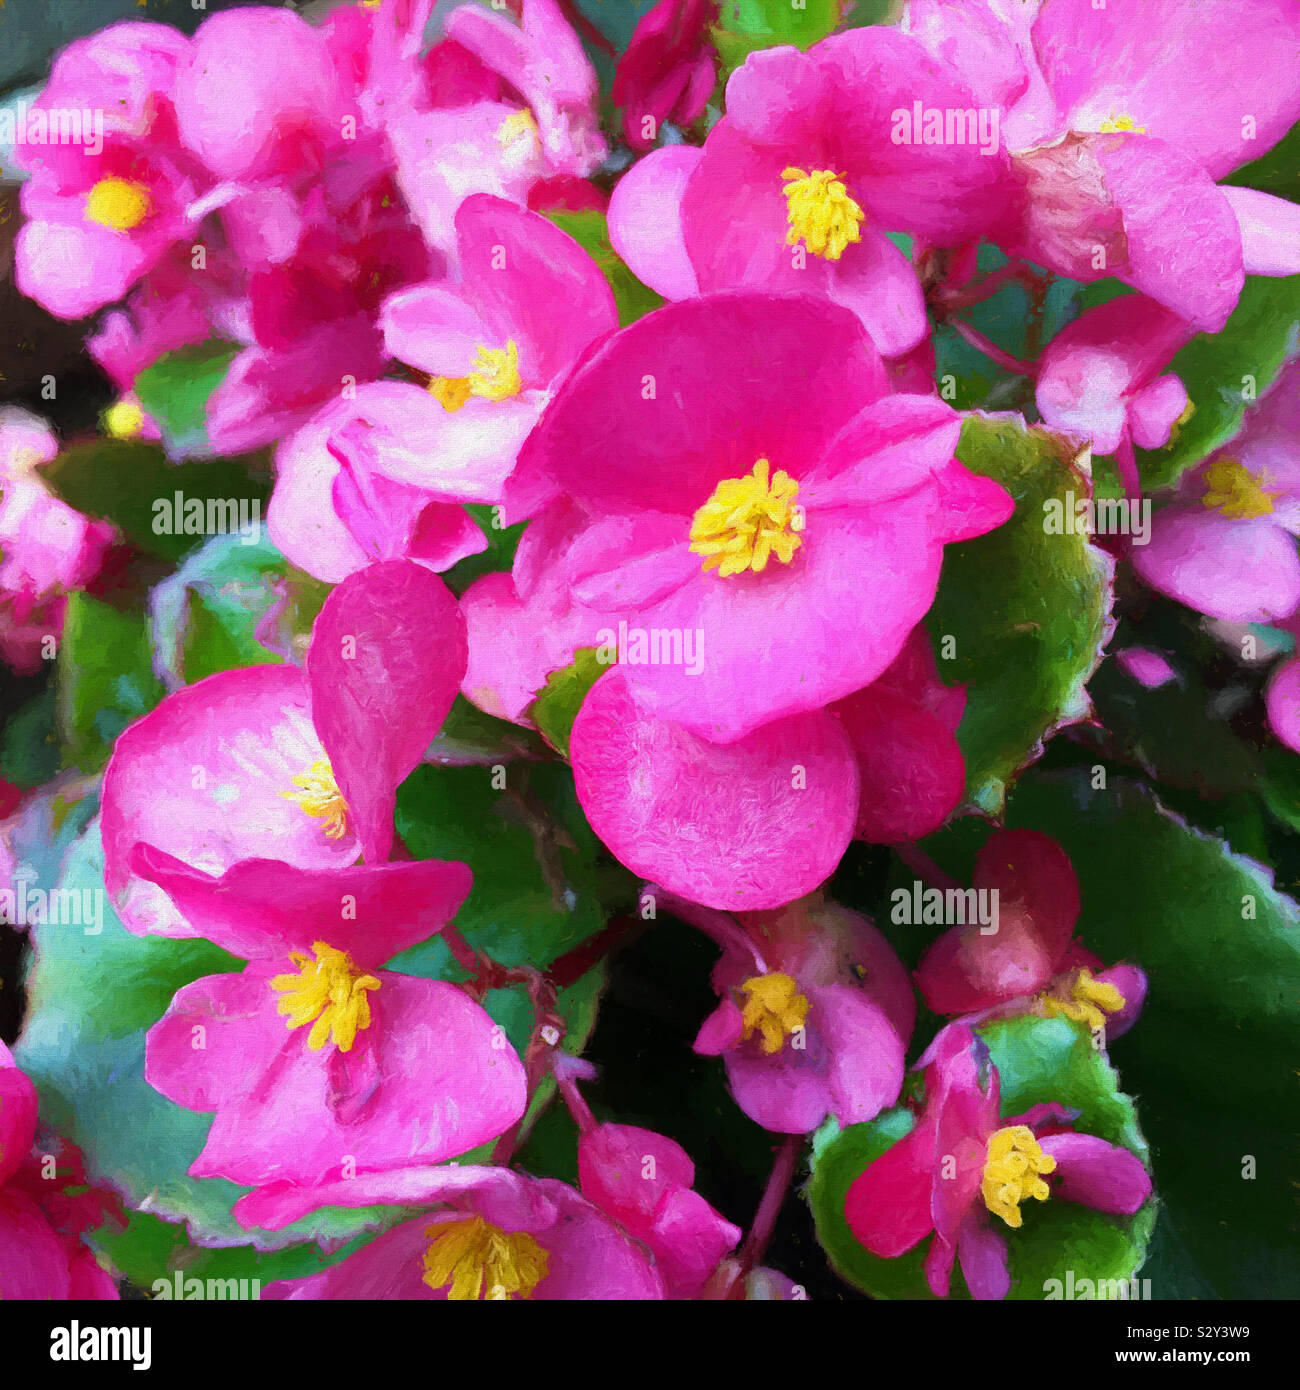 Bunte rosa Begonia Blüten mit leuchtend gelben Zentren in voller Blüte. Die Gattung Begonia enthält mehr als 1800 verschiedene Pflanzenarten. Stockfoto